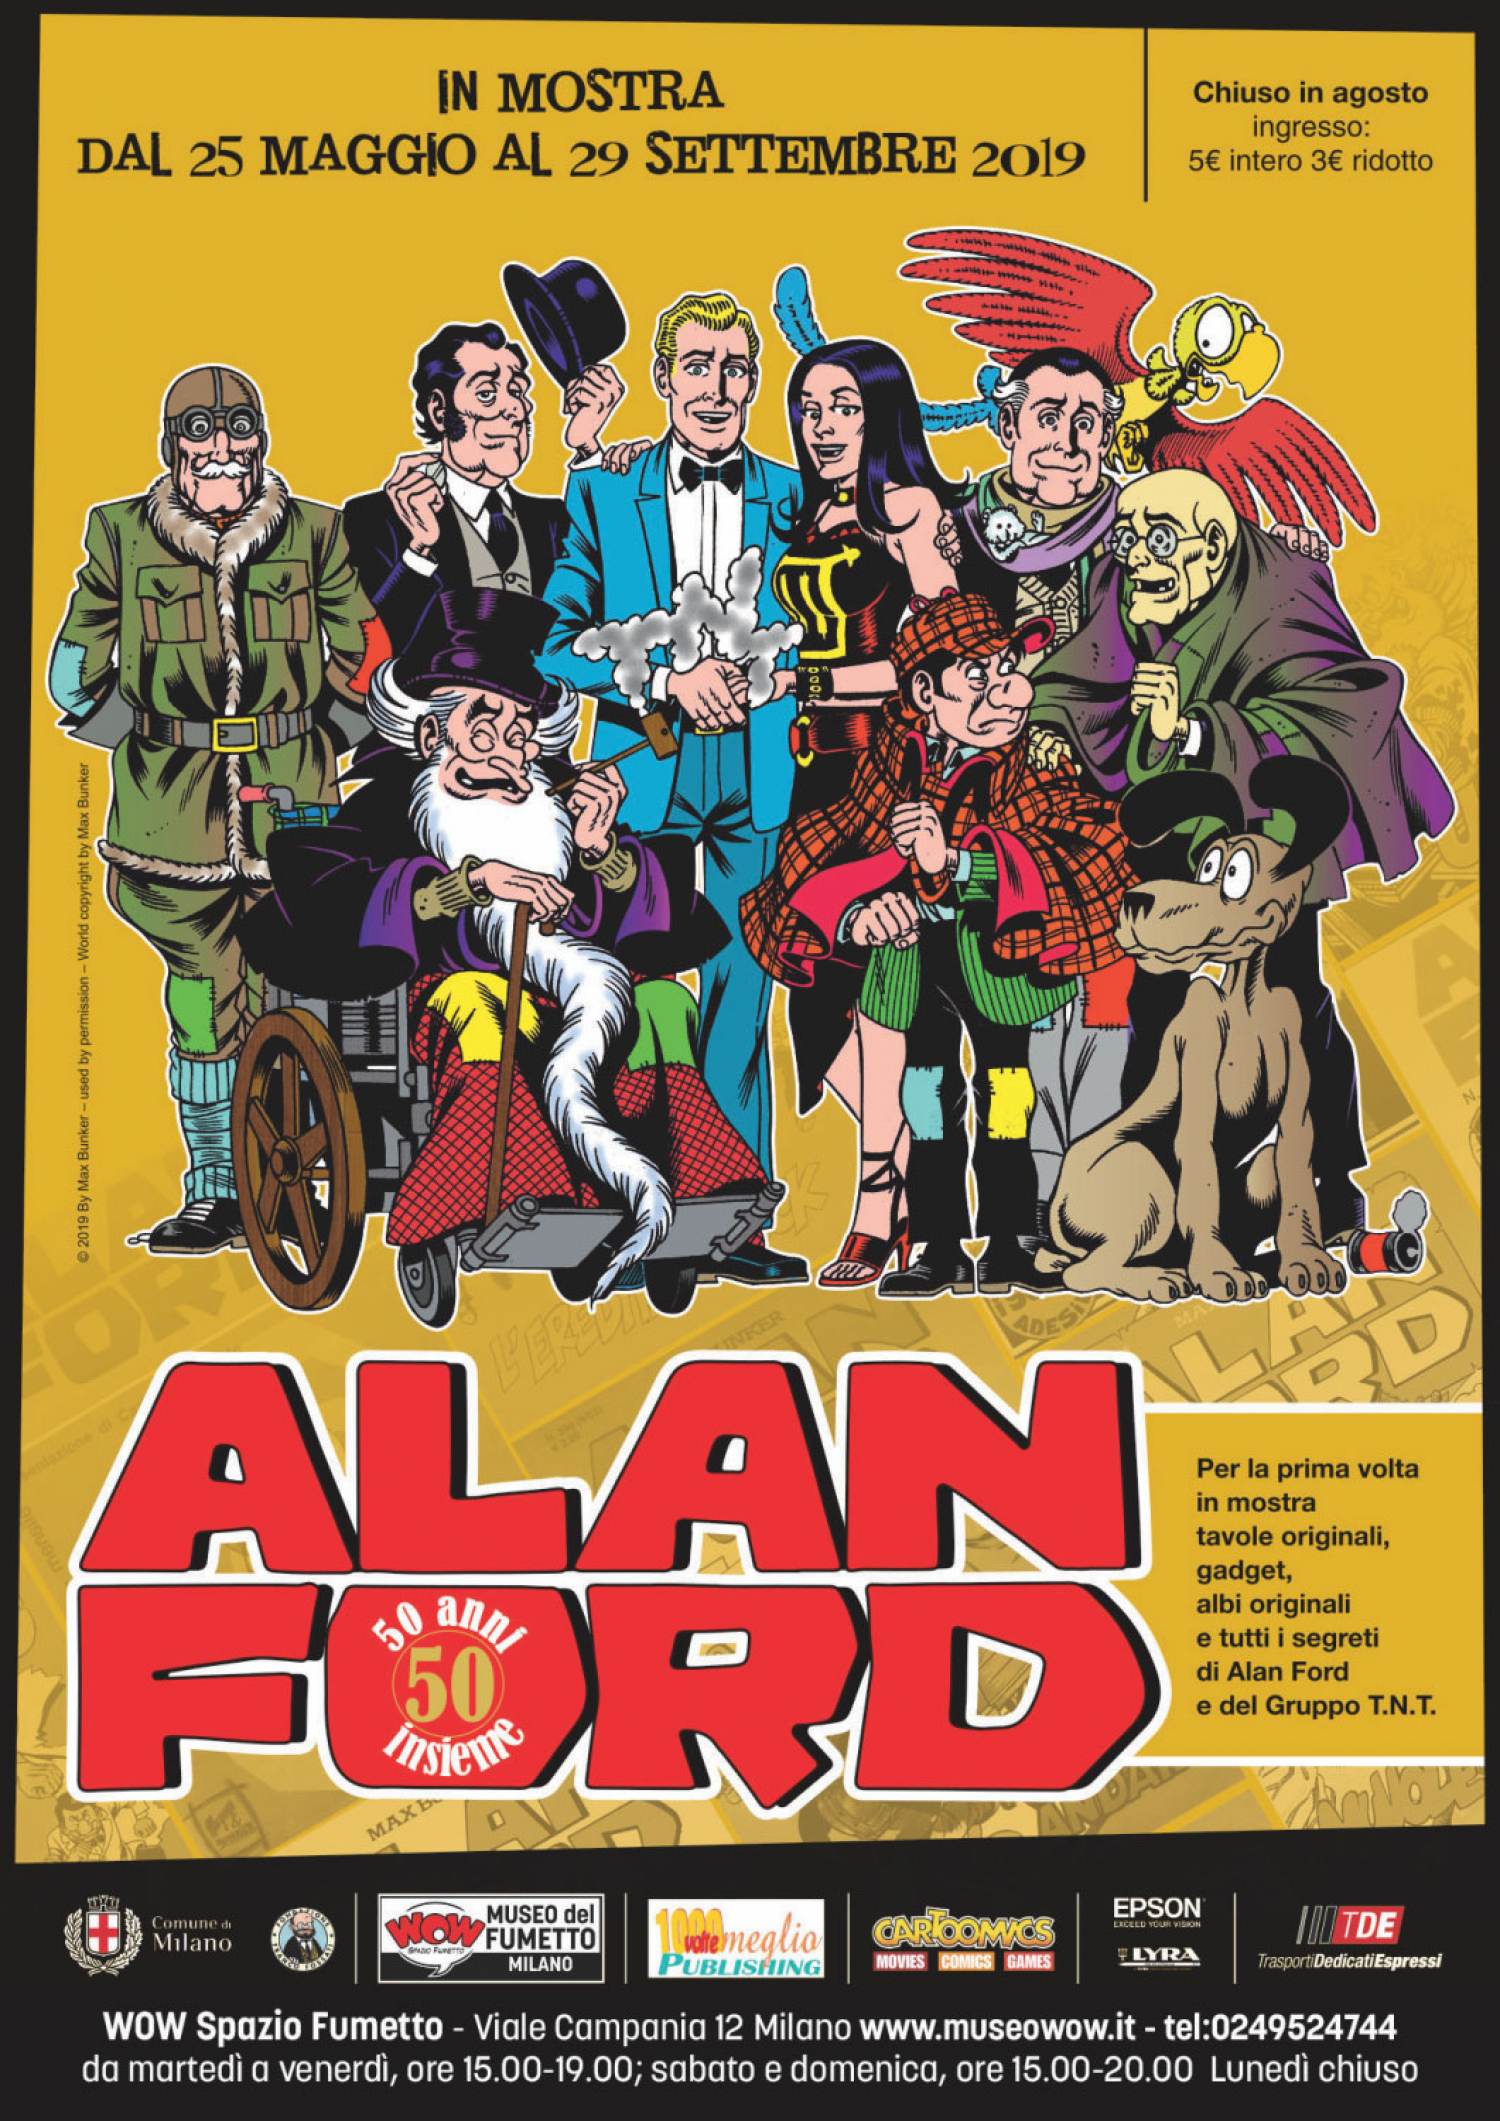 <p><strong>Nel maggio 1969 viene pubblicato il primo numero di Alan Ford, creato da Luciano Secchi (in arte Max Bunker) e Roberto Raviola (in arte Magnus). Alan Ford ha creato un nuovo modo di fare fumetto, mescolando ironia, umorismo, satira e un gusto surreale in una ricetta inedita che lo ha reso uno dei fumetti italiani pi&ugrave; amati dagli anni Settanta ad oggi. </strong> <strong>La mostra &ldquo;Alan Ford &ndash; 50 anni insieme&rdquo; racconta la straordinaria avventura editoriale che segna la nascita di Alan Ford: con grande spazio dedicato ai suoi protagonisti, il mitico gruppo TNT, ma anche ai nemici e ai comprimari attraverso una straordinaria raccolta di tavole originali e documenti mai esposti prima d&rsquo;ora tutti assieme in un contesto cos&igrave; celebrativo.</strong> <strong>L&rsquo;esposizione &egrave; realizzata in collaborazione con <a target="_blank" href="https://www.cartoomics.it/">Cartoomics</a> e <a target="_blank" href="http://www.1000voltemeglio.it/1000voltemeglio-publishing/">1000voltemeglio Publishing</a>.</strong> <strong>Anche se Alan Ford viene pubblicato nel maggio del 1969, la sua genesi &egrave; molto pi&ugrave; lunga</strong>: nell&rsquo;estate del 1968 Luciano Secchi sta lavorando alla sceneggiatura del primo numero di un nuovo lavoro, prendendo in prestito il nome da un omonimo fumetto di fantascienza dallo spagnolo di qualche anno prima. Il &ldquo;nuovo&rdquo; Alan Ford sar&agrave; per&ograve; del tutto diverso: l&rsquo;idea &egrave; di creare un fumetto comico, satirico, grottesco, riprendendo gli spunti umoristici che gi&agrave; facevano capolino in due serie di successo che Secchi (in arte <strong>Max Bunker</strong>) realizzava insieme a Roberto Raviola (che si firmava <strong>Magnus</strong>). A settembre la sceneggiatura &egrave; pronta e Magnus sta definendo l&rsquo;aspetto dei personaggi: manca solo quello del protagonista. Una sera al cinema i due vedono il film &ldquo;Ciao, Pussycat!&rdquo; e decidono di dare ad Alan il viso dell&rsquo;attore Peter O&rsquo;Toole: &egrave; il tassello che mancava. <strong>Il primo numero di Alan Ford esce a maggio del 1969, esattamente cinquant&rsquo;anni fa</strong>. All&rsquo;inizio le vendite non sono entusiasmanti, ma in seguito le vendite pian piano risalgono, fino all&rsquo;uscita del numero 26, intitolato &ldquo;Superciuk&rdquo;: con l&rsquo;esordio del cattivo pi&ugrave; famoso della serie Alan Ford si trasforma in un grande successo, diventando uno dei fumetti pi&ugrave; popolari degli anni Settanta. Pur attraverso tante vicissitudini editoriali e creative, le avventure di Alan Ford proseguono ancora oggi, toccando <strong>50 anni di pubblicazione ininterrotta e 600 numeri all&rsquo;attivo</strong>. Per festeggiare questa importante ricorrenza e dopo la preview all&rsquo;ultima edizione di Cartoomics, WOW Spazio Fumetto organizza la mostra &ldquo;<strong>Alan Ford. 50 anni insieme</strong>&rdquo;: un percorso inedito e divertente alla scoperta di Alan Ford, dello scombinato Gruppo T.N.T., degli amici, dei nemici e di tutti i segreti di questa spassosa serie a fumetti. La prima area della mostra &egrave;&nbsp;dedicata ai <strong>creatori di Alan Ford</strong>, Max Bunker e Magnus, e alle loro creazioni precedenti e successive ad Alan Ford, raccontate attraverso albi originali e preziose tavole originali. Sar&agrave; poi presente un focus dedicato alla casa editrice che ha iniziato a pubblicare la serie: l&rsquo;<strong>Editoriale Corno</strong>, che ha pubblicato gli altri grandi successi di Magnus &amp; Bunker e che ha portato per prima in Italia i supereroi Marvel. L&rsquo;area centrale della mostra &egrave; invece dedicata ai <strong>50 anni di avventure di Alan Ford e del gruppo TNT</strong>: i personaggi del cast sono passati in rassegna grazie a grandi pannelli-carta d&rsquo;identit&agrave; a colori e ad approfondimenti, che passano in rassegna tutte le gag pi&ugrave; spassose della serie. Non manca poi una panoramica dei grandi nemici del Gruppo, pittoreschi come e pi&ugrave; dello stesso gruppo TNT. Il pi&ugrave; famoso &egrave; senza dubbio Superciuk, uno spazzino che acquisisce una fiatata letale dopo aver bevuto del vino adulterato, ma ci sono anche la spia Margot, Gommaflex, il bandito con la faccia di gomma ideato per la trasmissione tv Supergulp, e tanti altri. All&rsquo;interno della mostra sar&agrave; presente anche uno spazio dedicato ad <strong>Alan Ford all&rsquo;estero</strong>: tradotto anche in Francia, Danimarca e Brasile, Alan Ford &egrave; famosissimo nei paesi dell&rsquo;ex Jugoslavia, tanto da essere presente in diversi film del celebre regista Emir Kusturica. Ad accompagnare il percorso tutto quello che &egrave; Alan Ford e il Gruppo TNT fuori dagli albi a fumetti: poster, diari, quaderni, maschere di carnevale, dischi e tutti i gadget realizzati per l&rsquo;Alan Ford Club, ma anche le apparizioni sulle pagine dei quotidiani e quelle televisive all&rsquo;interno del mitico programma SuperGulp! In mostra anche un approfondimento dedicato agli altri artisti che hanno proseguito la serie sempre su testi di Max Bunker, in particolare <strong>Paolo Piffarerio</strong>, che ha raccolto il testimone di Magnus dal n. 76 della serie e <strong>Dario Perucca</strong>, che dopo aver esordito nel 1986 &egrave; tutt&rsquo;oggi il principale disegnatore della serie. Ci sar&agrave; anche la possibilit&agrave; di una <strong>foto-ricordo</strong> accanto ad Alan Ford, Bob Rock e al Numero Uno, proprio davanti all&rsquo;ingresso dello scalcinato negozio di fiori che cela la sede del pi&ugrave; improbabile gruppo di agenti segreti del mondo. L&rsquo;ultima parte della mostra &egrave; una &ldquo;<strong>Galleria d&rsquo;arte</strong>&rdquo; dedicata al mondo di Alan Ford, con una ricca selezione di tavole e illustrazioni originali create dagli artisti che hanno lavorato sulla serie: Magnus, Paolo Piffarerio e Dario Perucca, che dopo aver esordito nel 1986 &egrave; tutt&rsquo;oggi il principale disegnatore della serie. Tra le tante tavole presenti, una tratta dal mitico numero 1 della serie, una matita di Magnus tratta dal numero 65 &ldquo;Un tiro mancino&rdquo; completata poi a china da Luigi Corteggi e due tavole dal numero 200, che segna il ritorno di Magnus ad Alan Ford per una storia speciale in cui il capo del gruppo T.N.T,, il Numero Uno, riappare dopo essere stato dato per morto.</p><p><strong>Inaugurazione&nbsp;sabato 25 maggio alle ore 16:00, alla presenza di Luciano Secchi (Max Bunker), Dario Perucca (attuale disegnatore di Alan Ford), Moreno Burattini (autore del volume &ldquo;Max Bunker. Una vita da Numero Uno&rdquo;), Luigi F. Bona e Filippo Mazzarella (direttore artistico di Cartoomics). </strong></p>